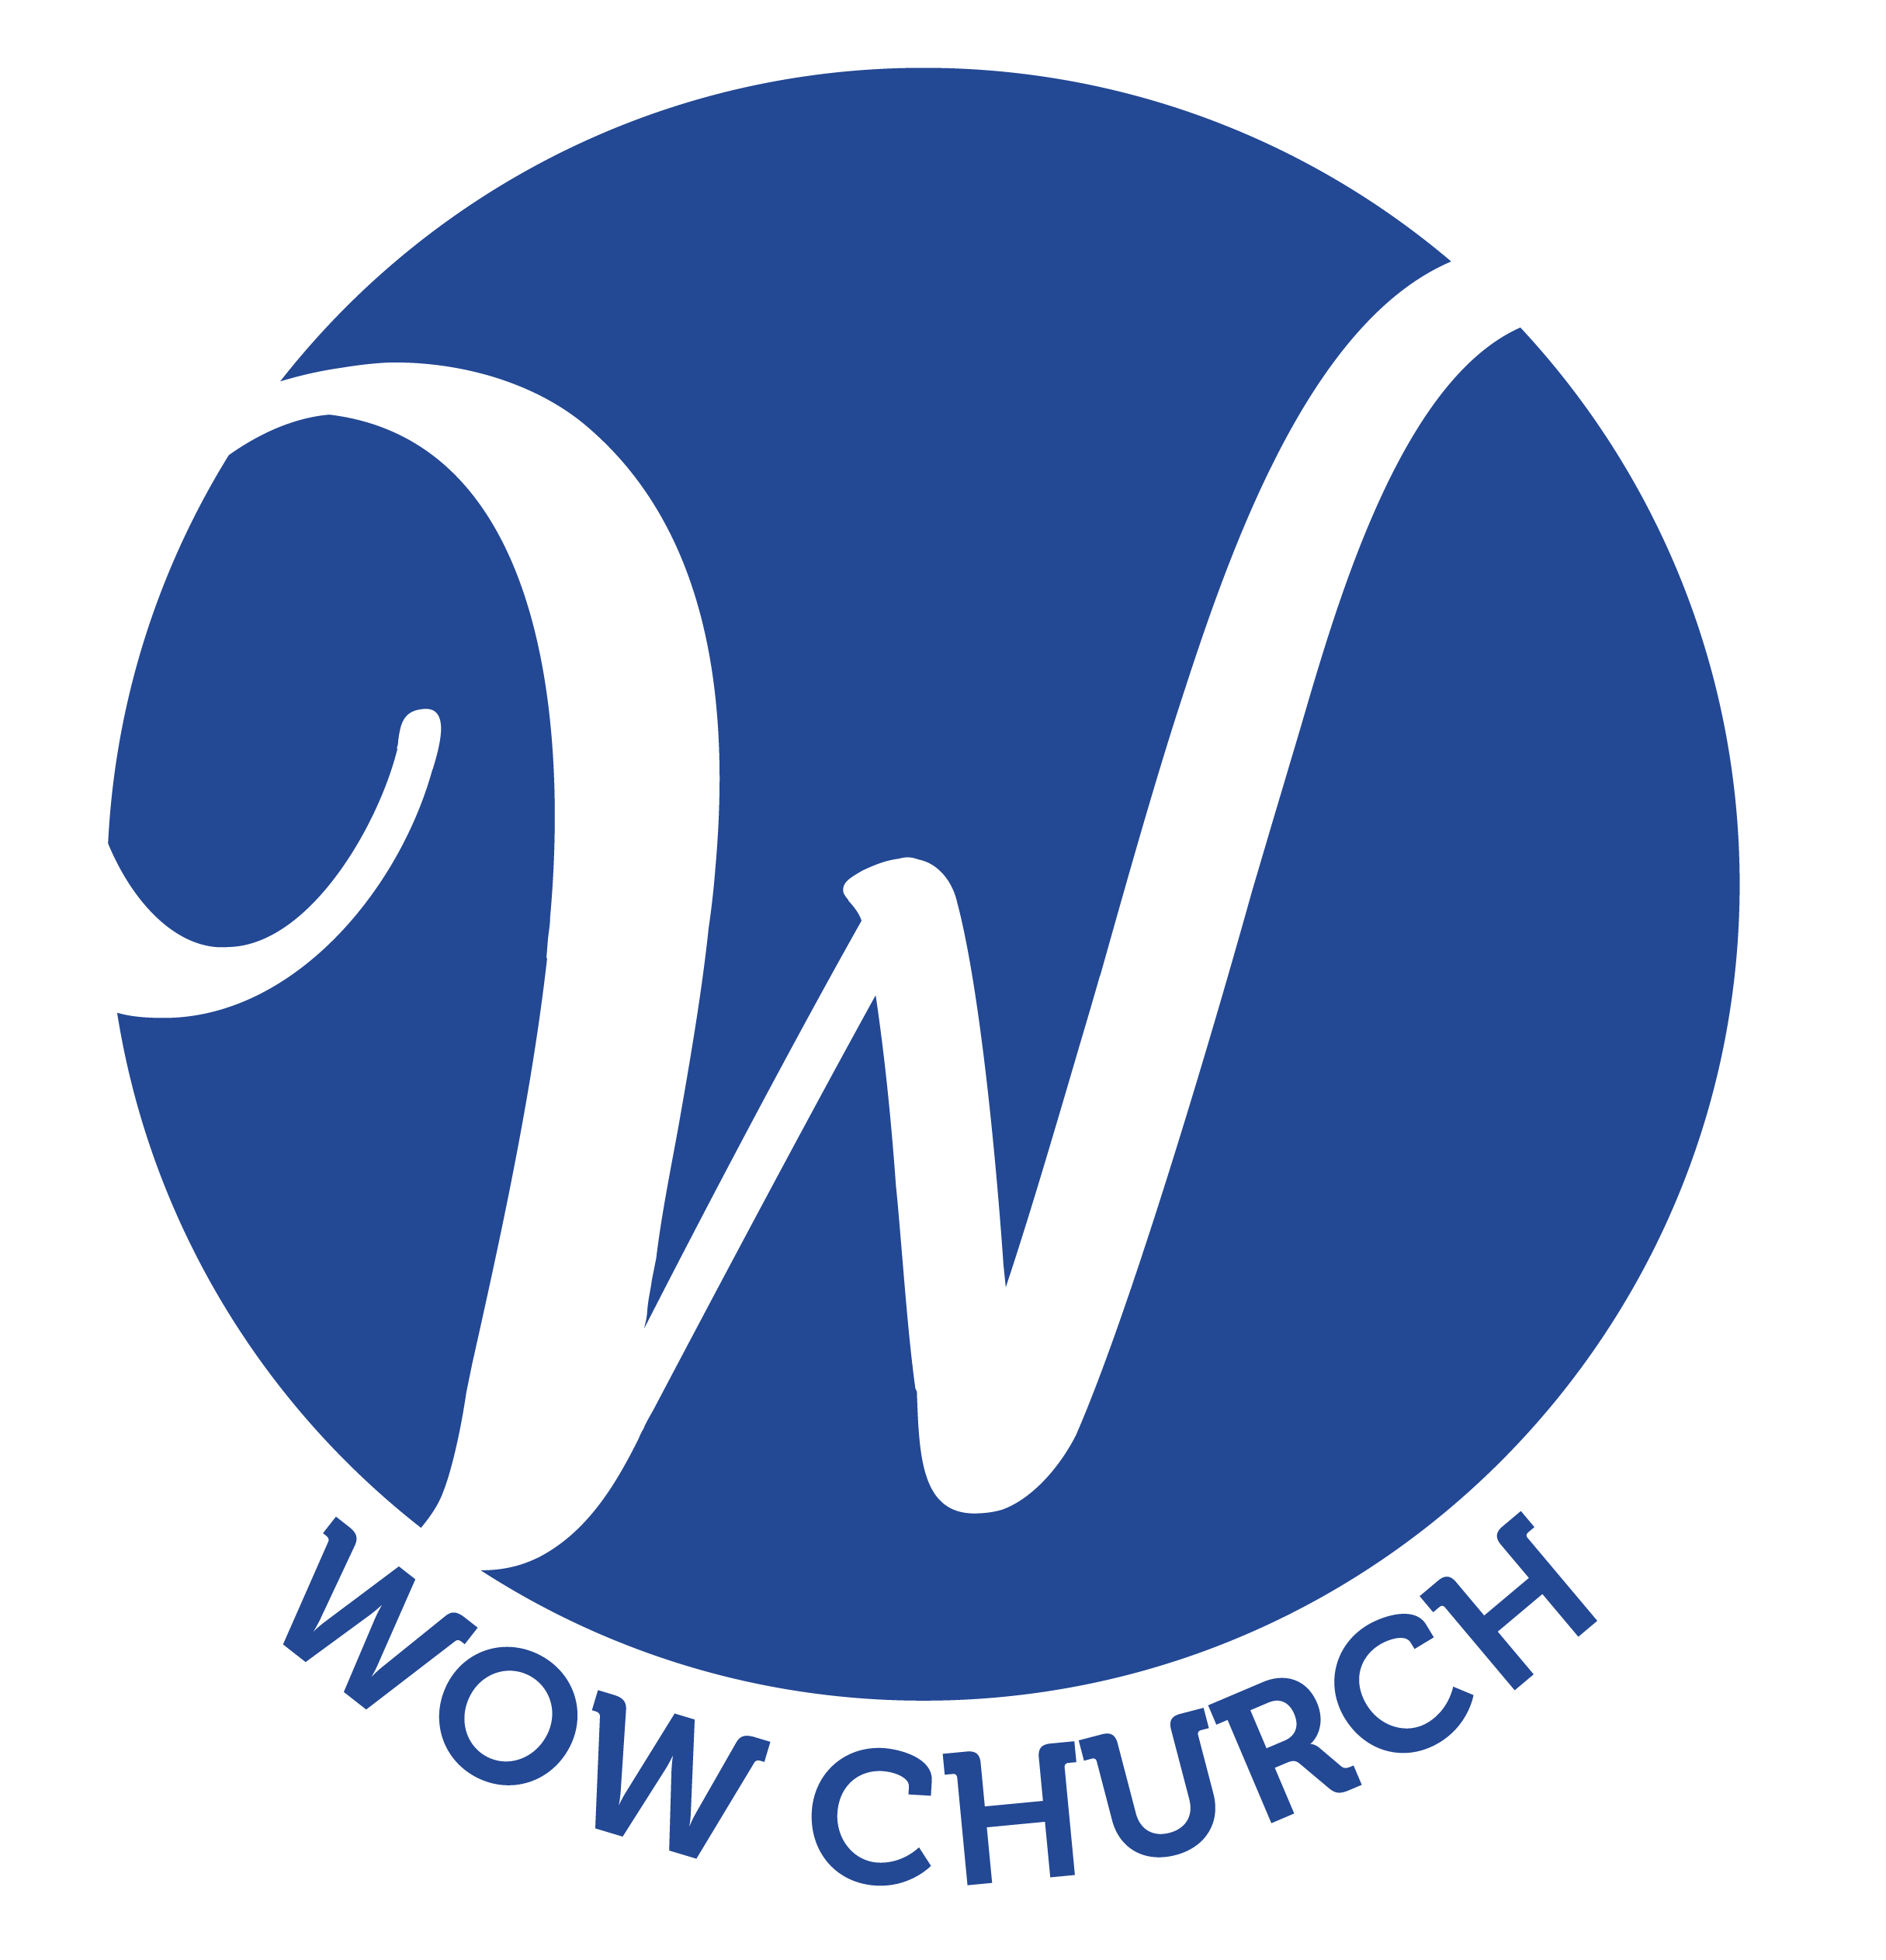 WOW Church